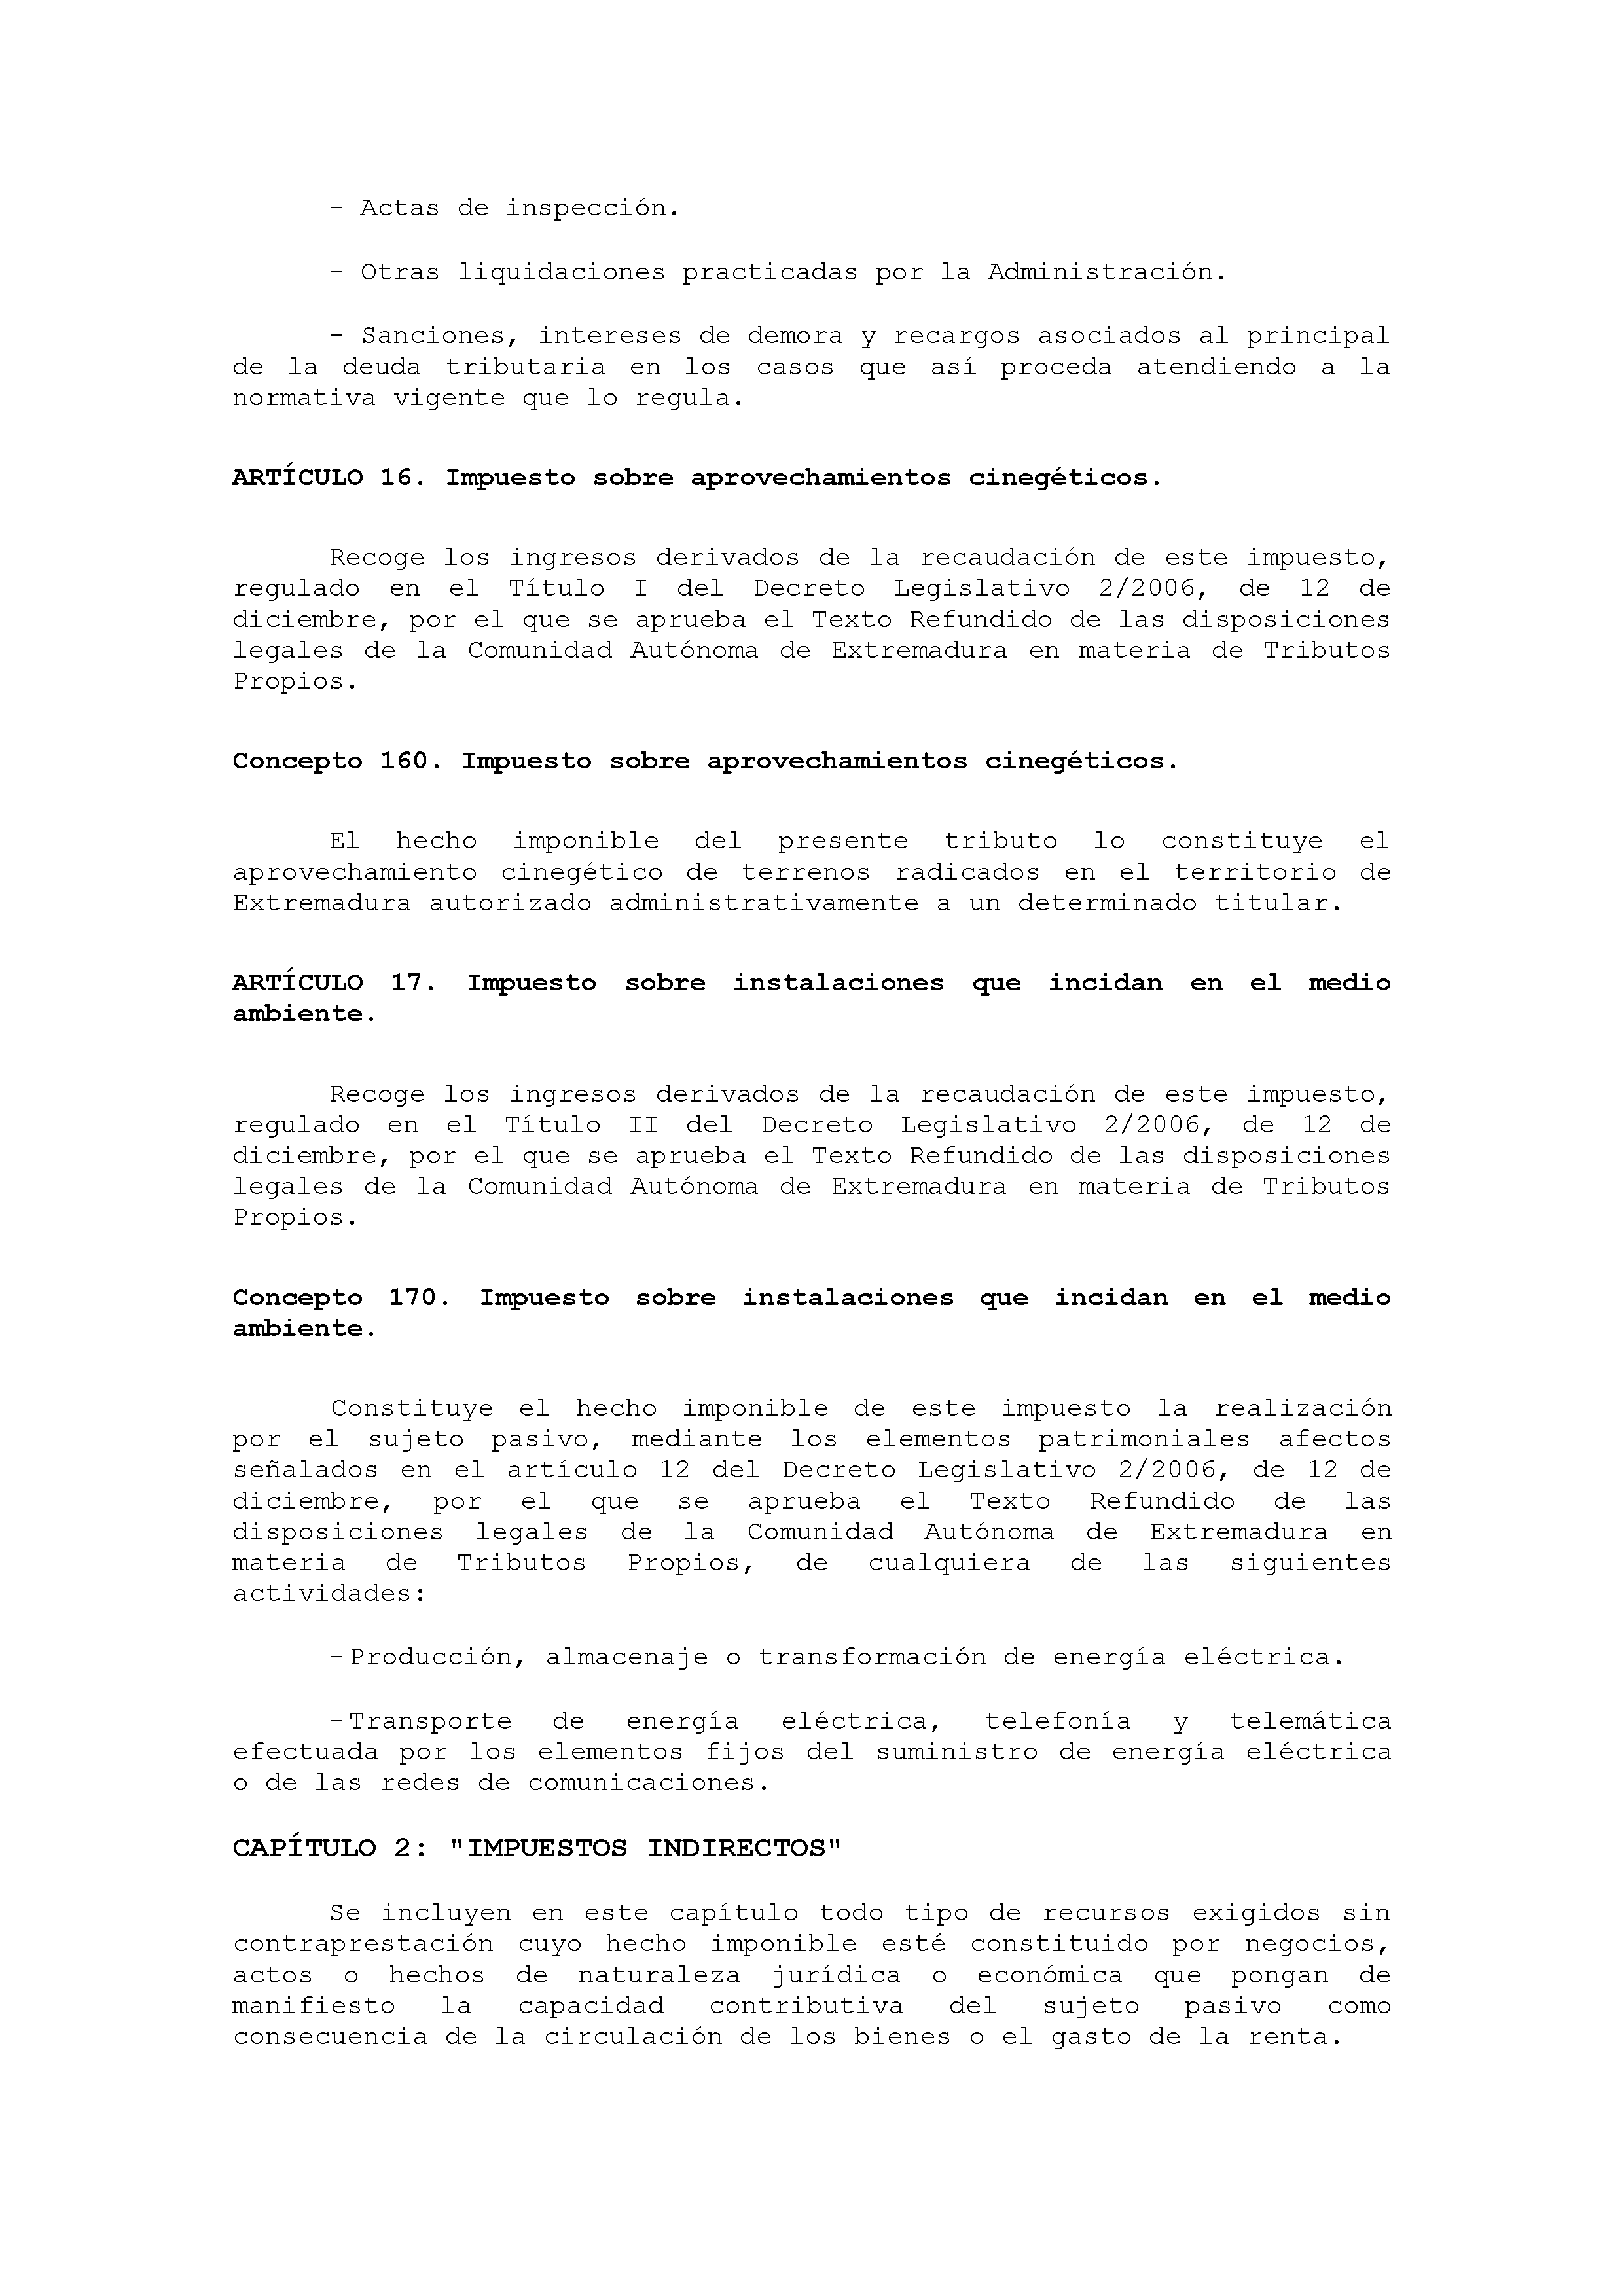 ANEXO VIII CÓDIGO DE LA CLASIFICACIÓN ECONÓMICA DE LOS INGRESOS PÚBLICOS Pag 3